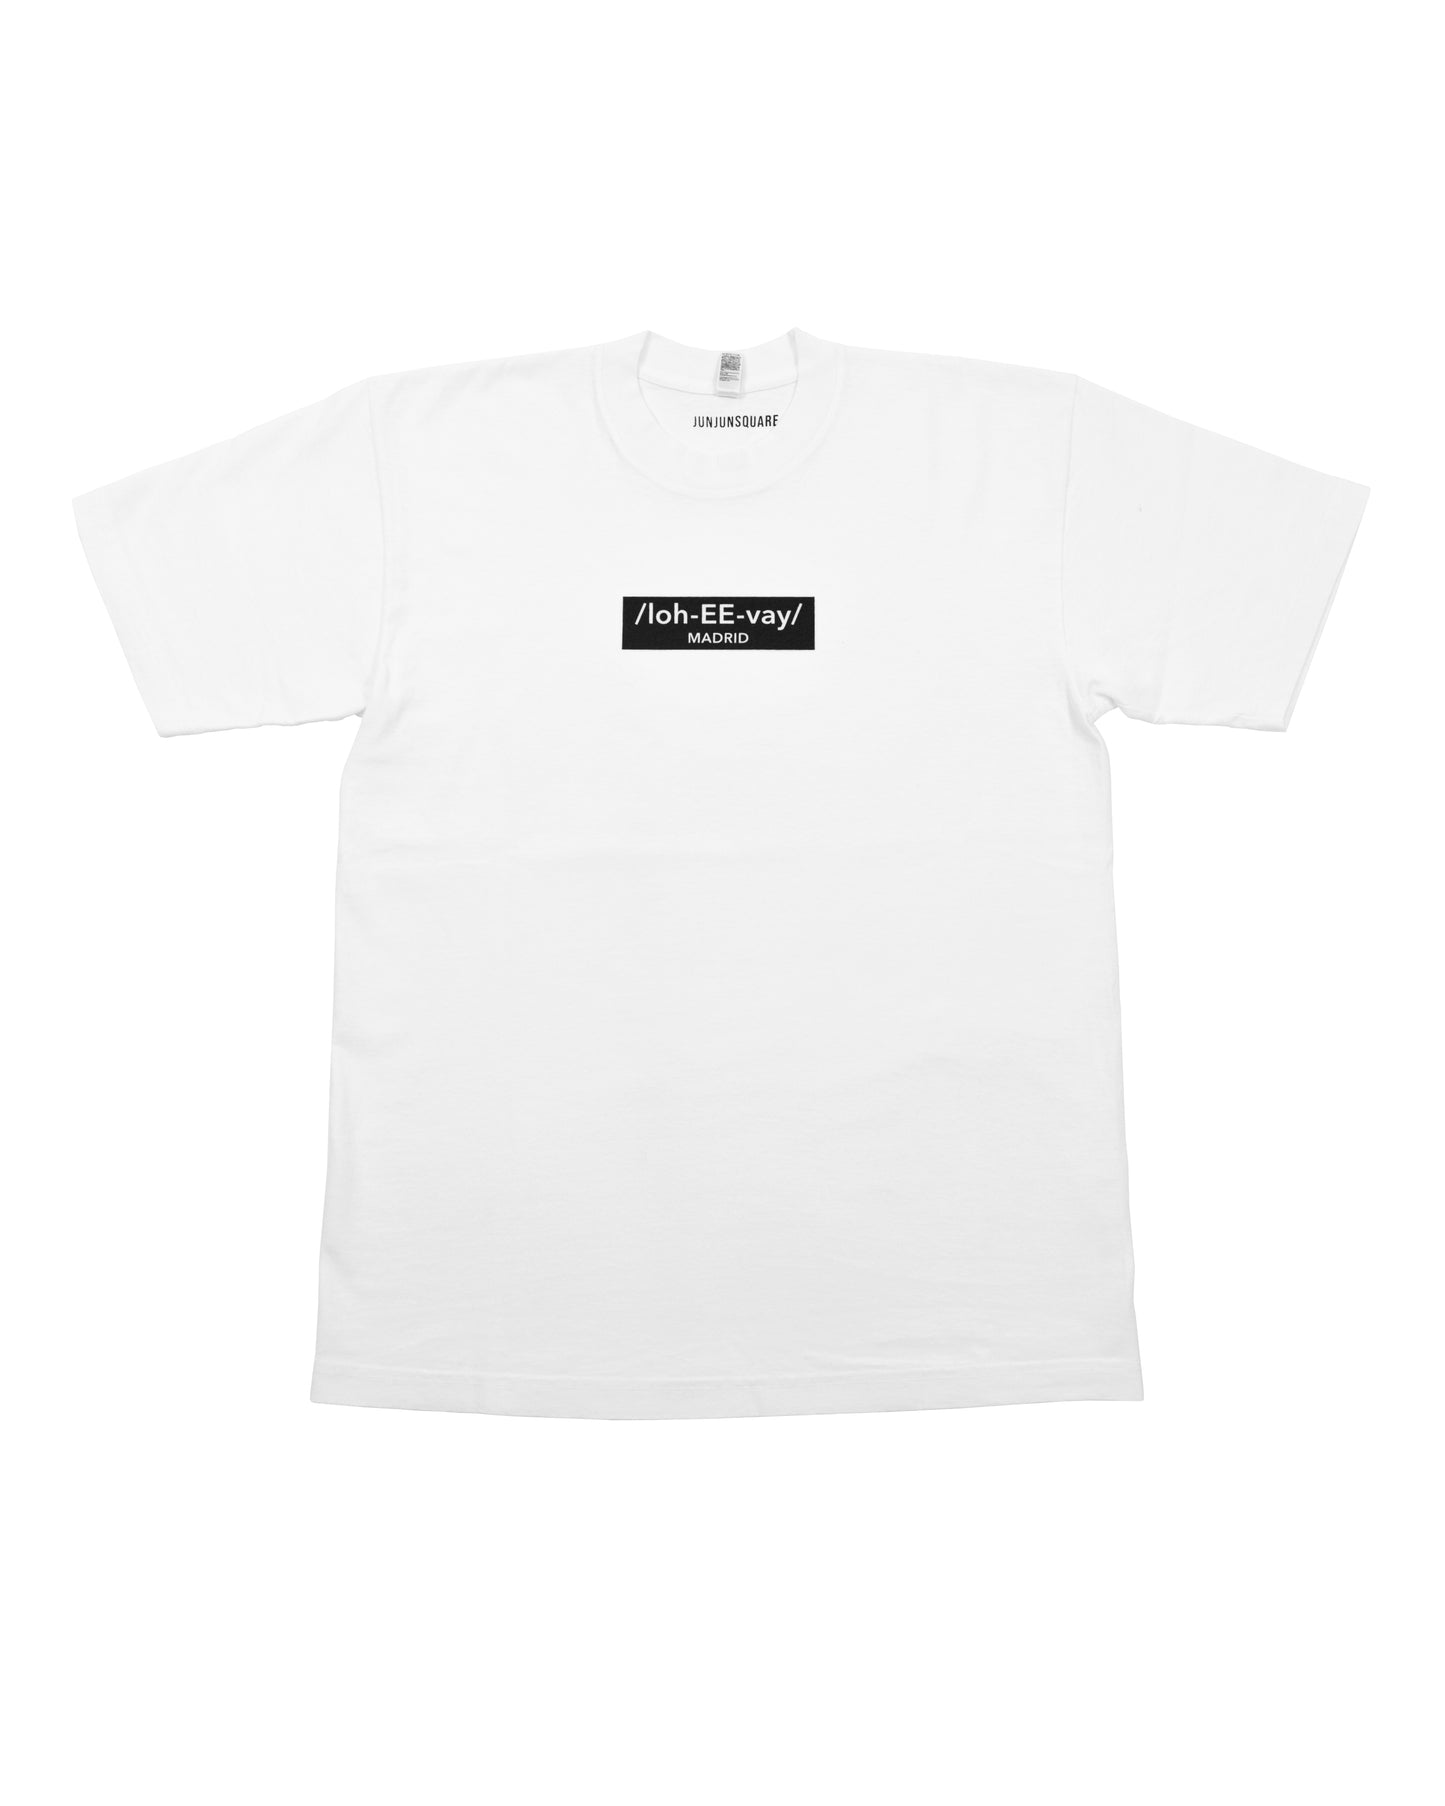 T-Shirt (lo-EE-vay)